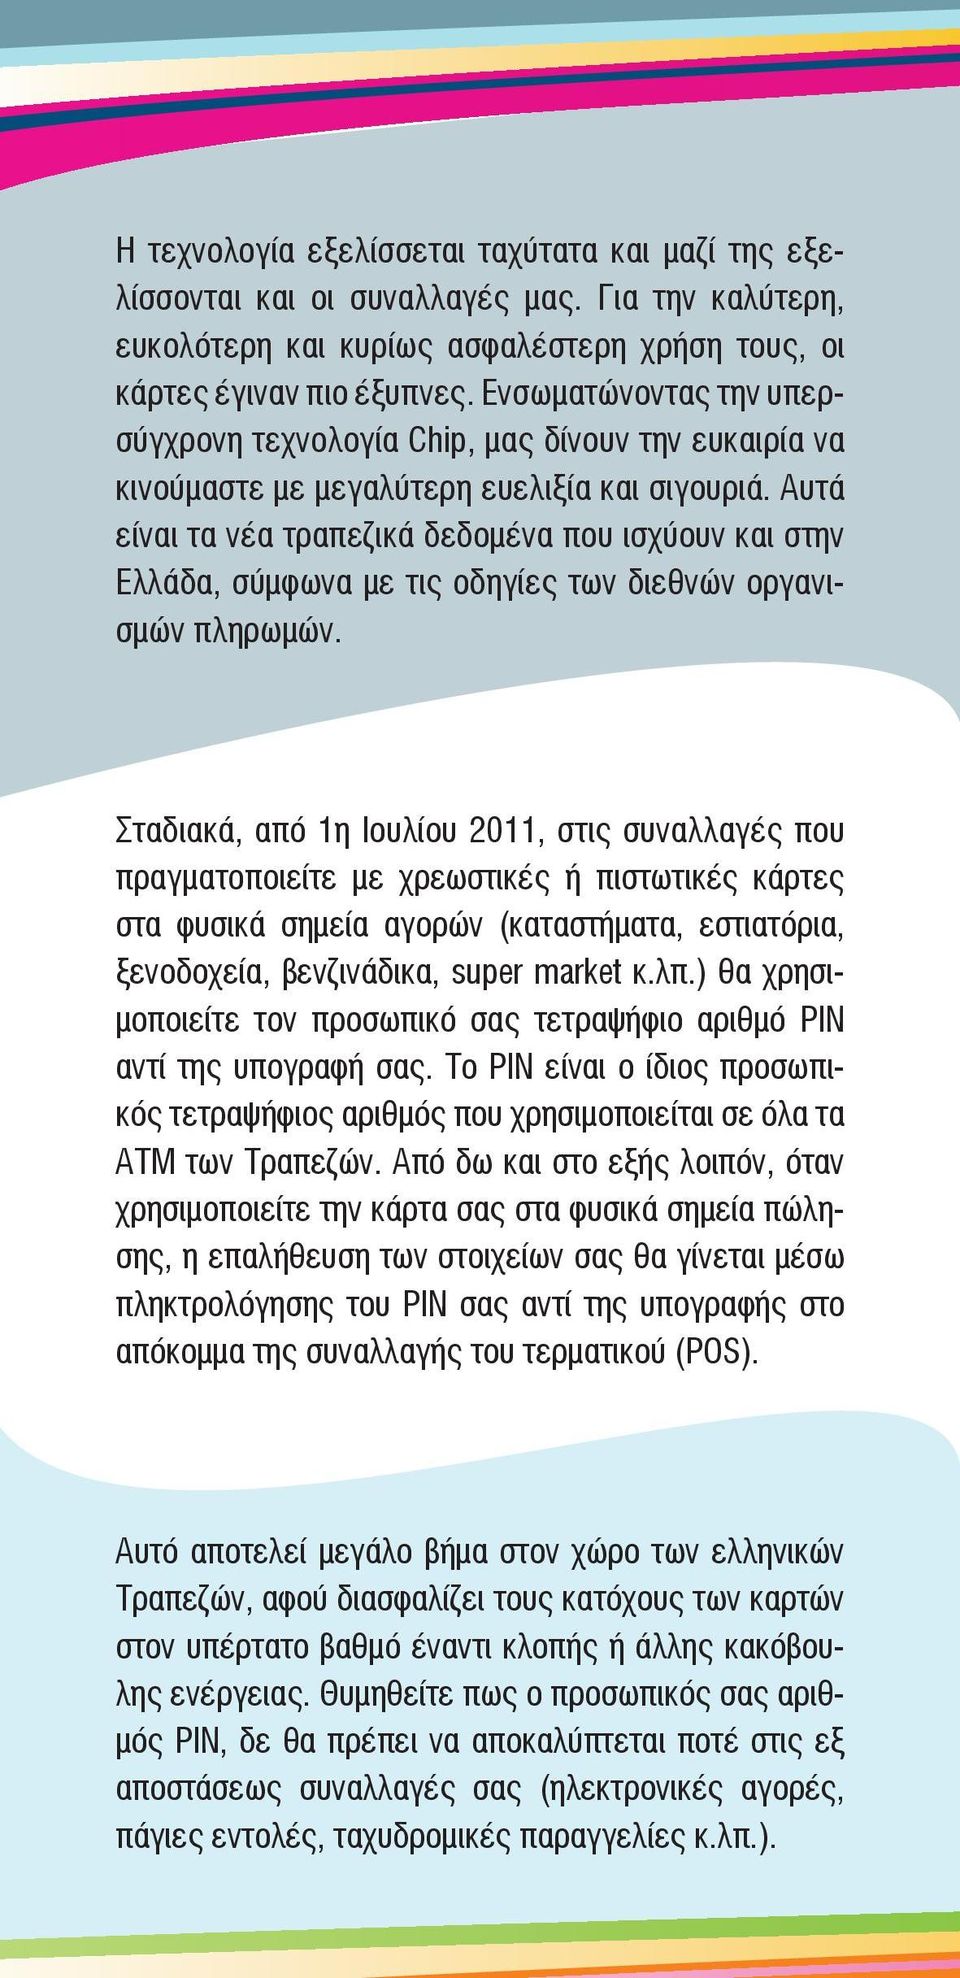 Αυτά είναι τα νέα τραπεζικά δεδομένα που ισχύουν και στην Ελλάδα, σύμφωνα με τις οδηγίες των διεθνών οργανισμών πληρωμών.